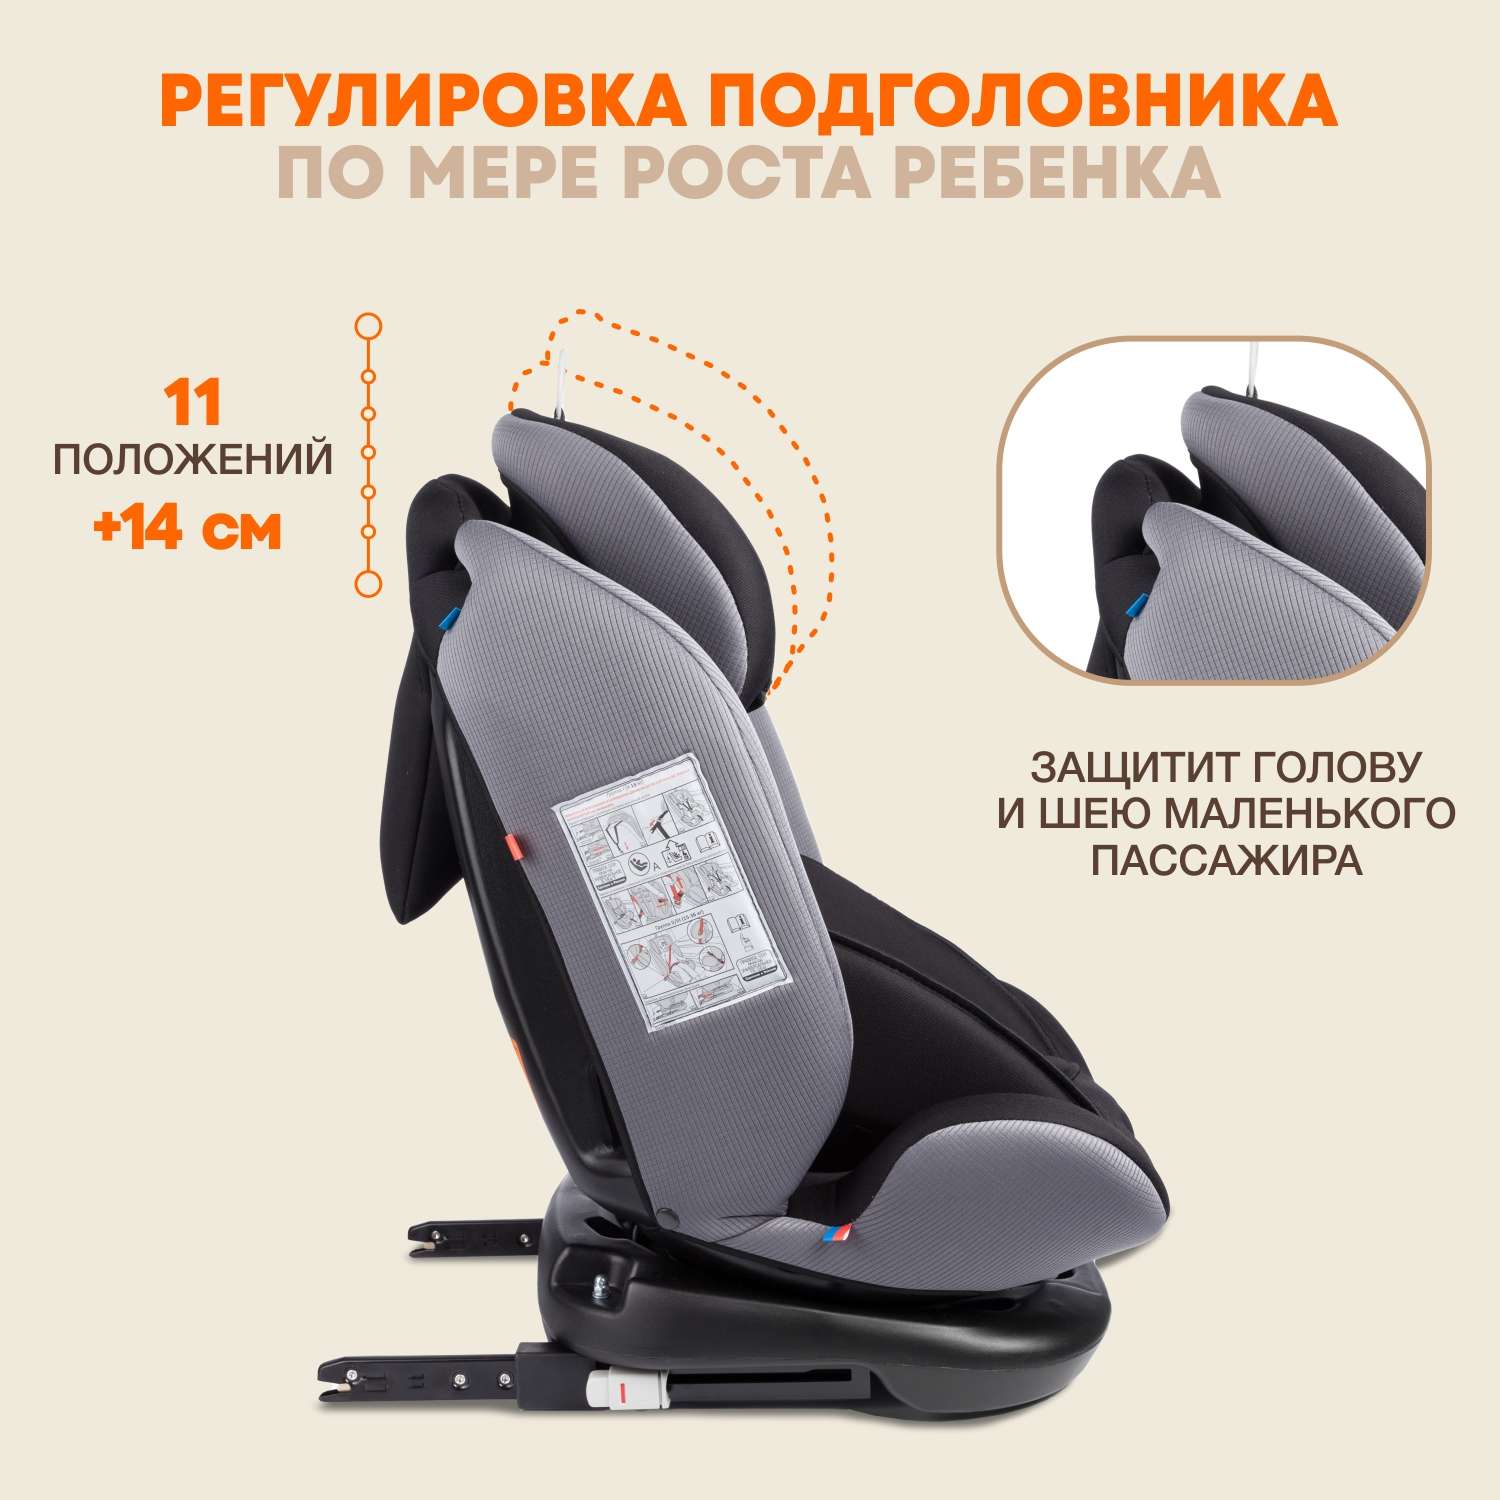 Автомобильное кресло ZLATEK УУД Zlatek Cruiser Isofix гр. 0+/I/II/III серый черный - фото 6